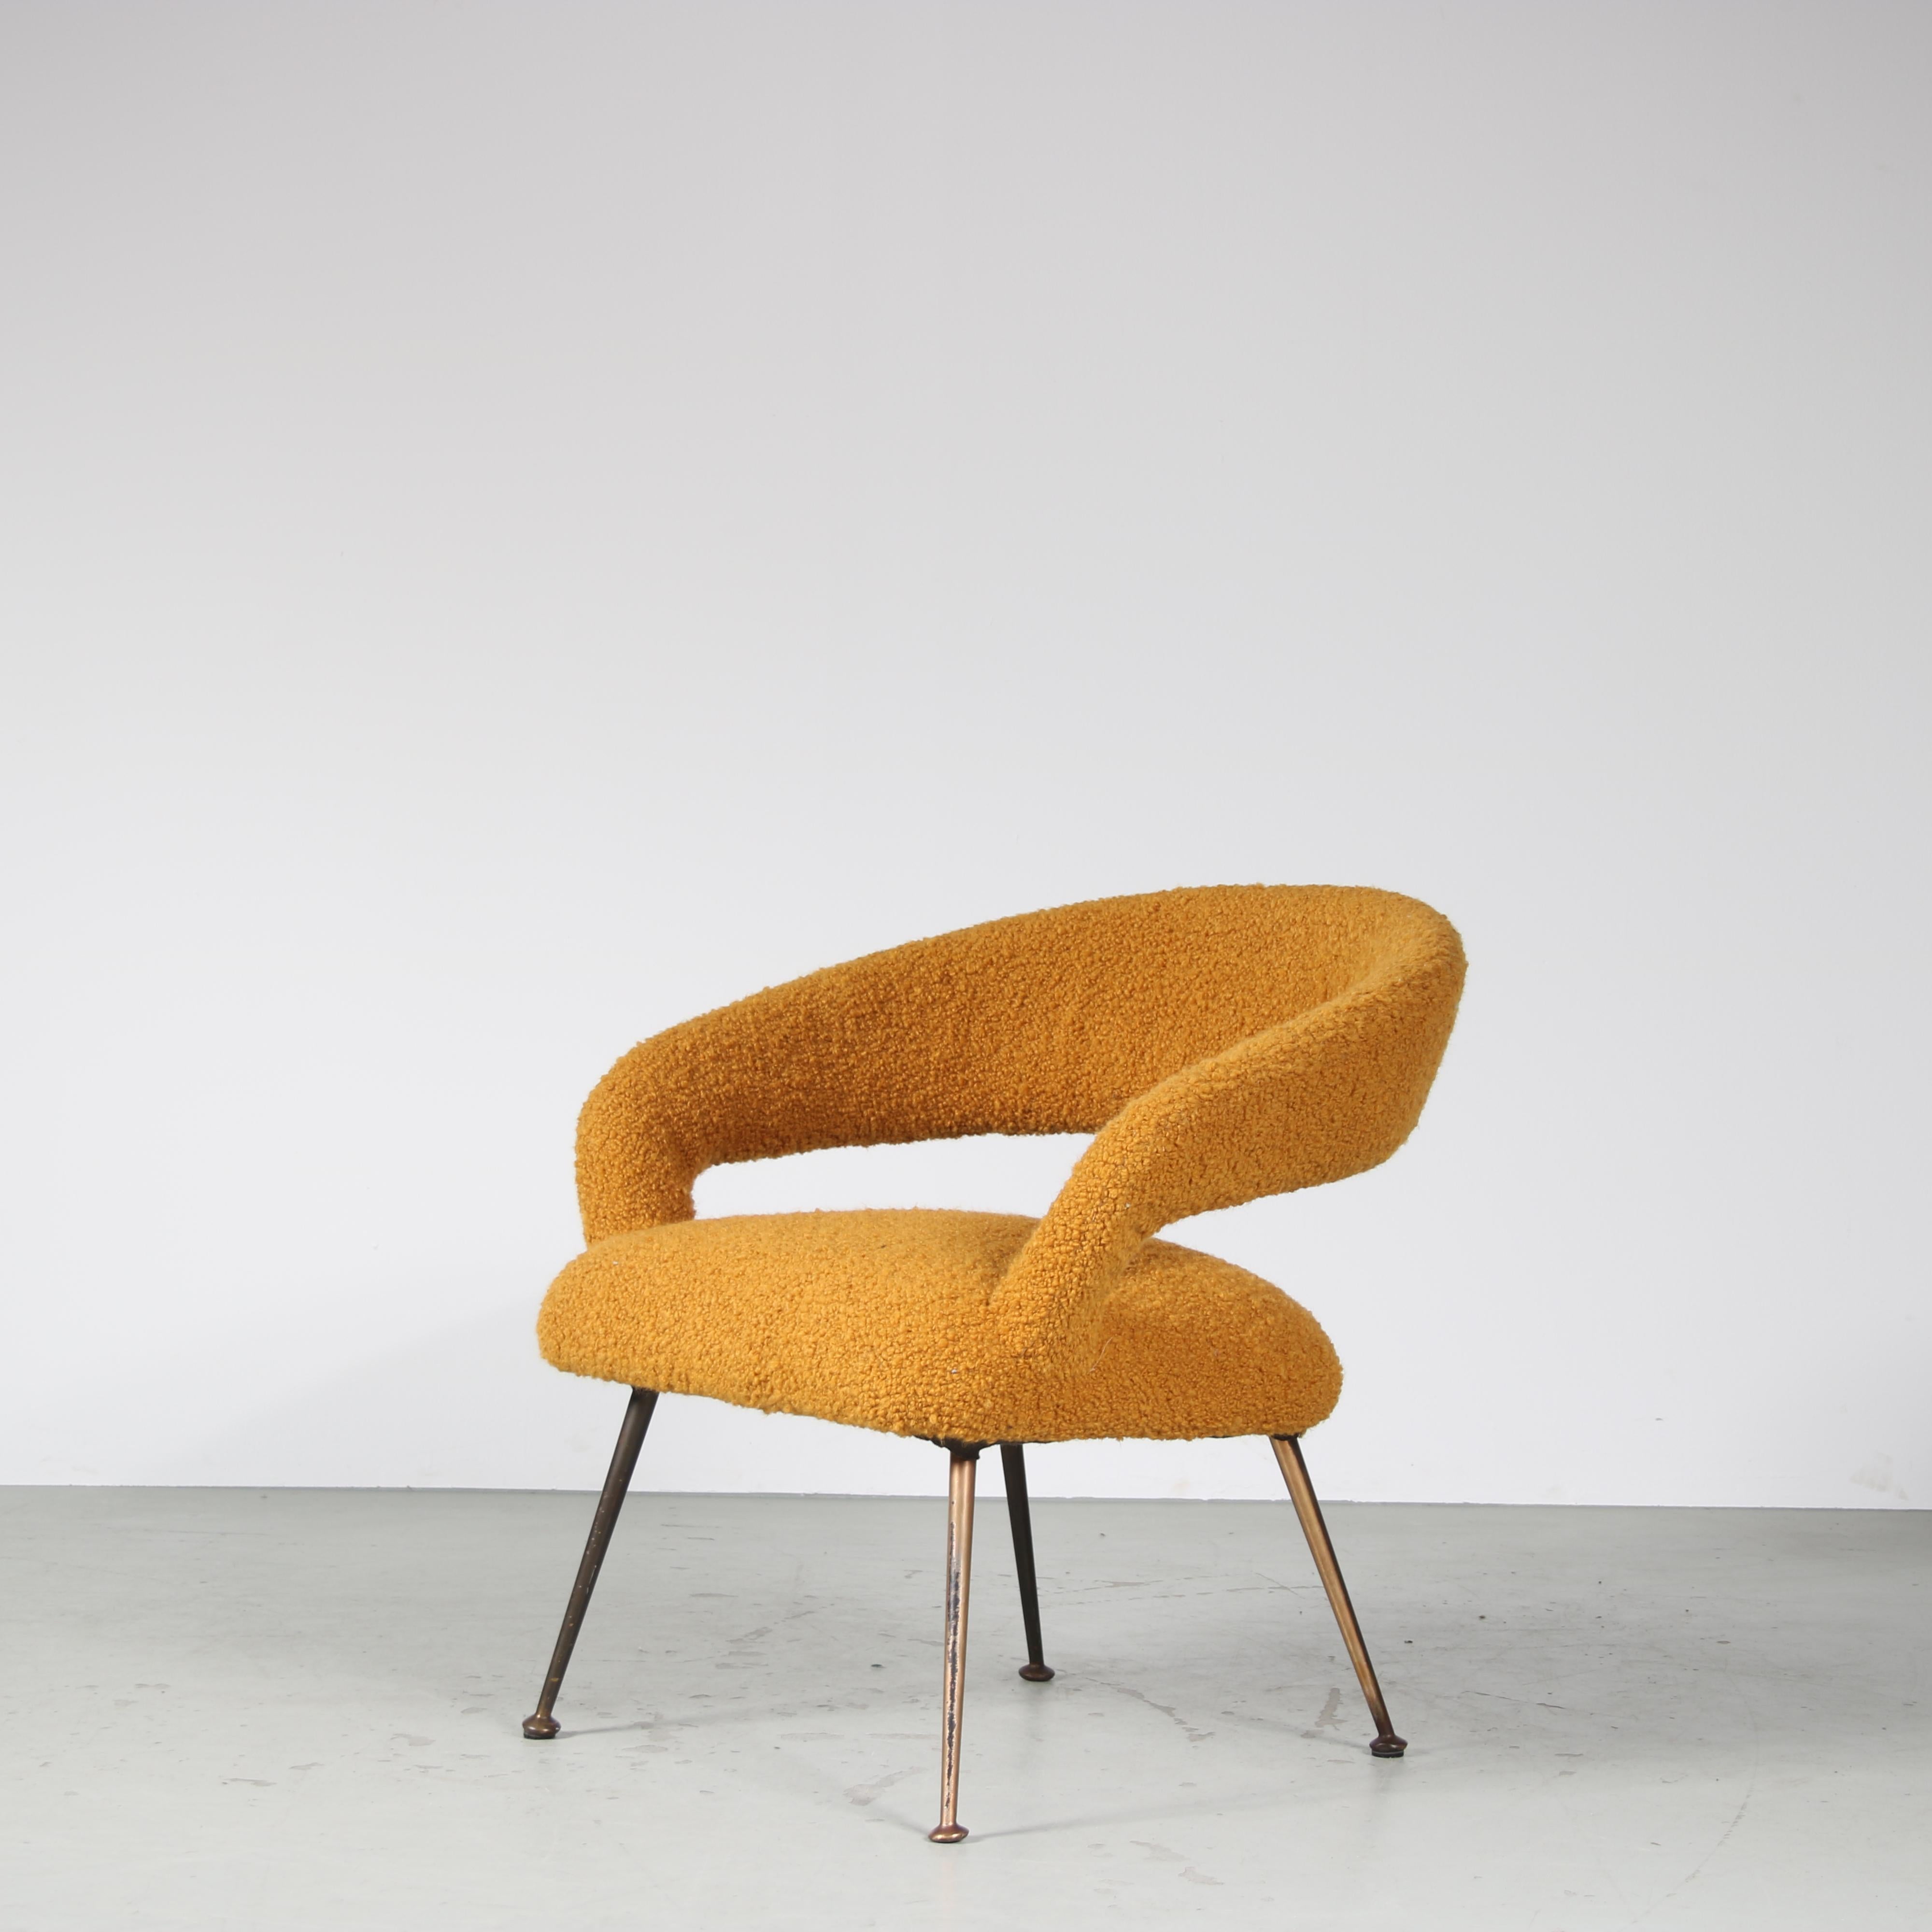 Un beau fauteuil élégant, conçu par Gastone Rinaldi et fabriqué par RIMA en Italie vers 1950.

L'assise joliment incurvée repose sur quatre pieds en laiton légèrement effilés. Tout cela contribue au style luxueux de la pièce, magnifiquement complété